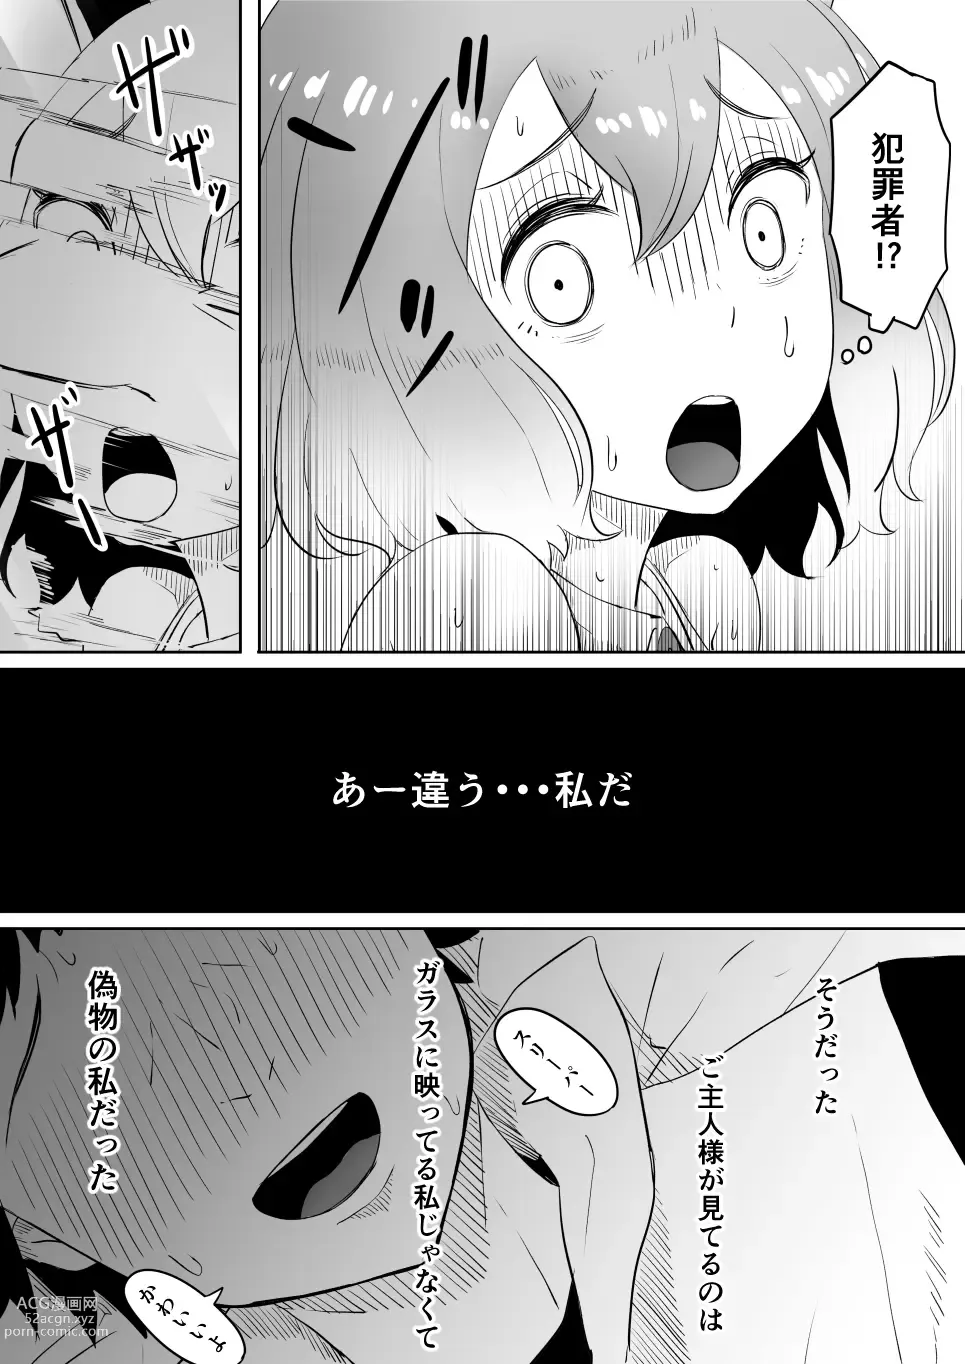 Page 27 of doujinshi Koi o Shita Sleeper-chan.